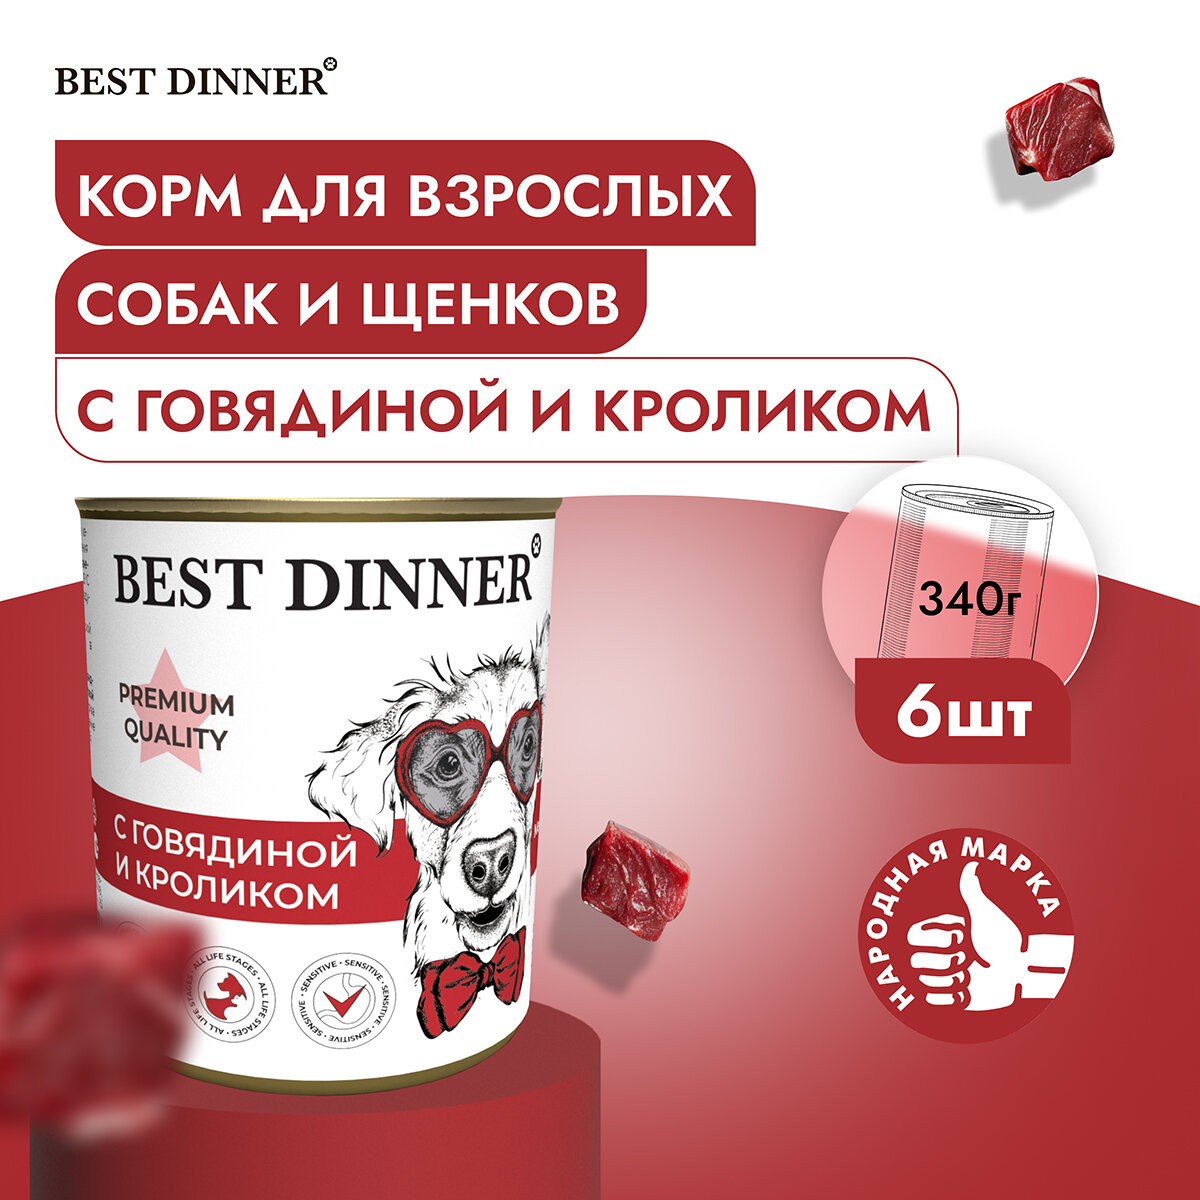 Влажный консервированный корм Best Dinner Бест Диннер для собак Premium Меню №3, говядина, кролик, 340 гр. по 6шт.